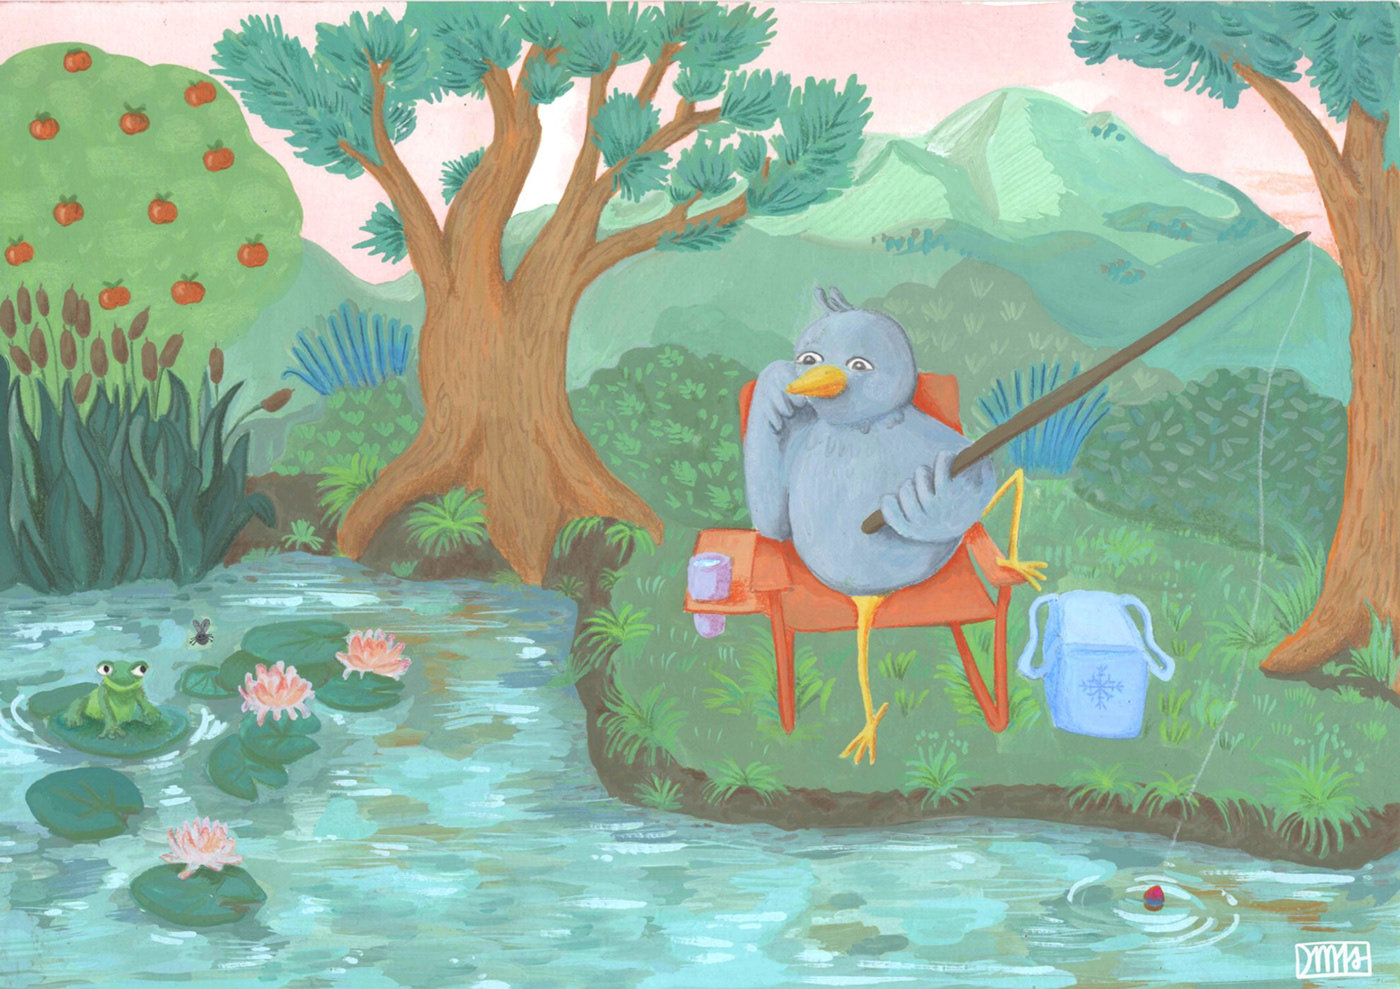 gouache illustration jeunesse children's book edition oiseau Nature traditionnel peinture édition jeunesse